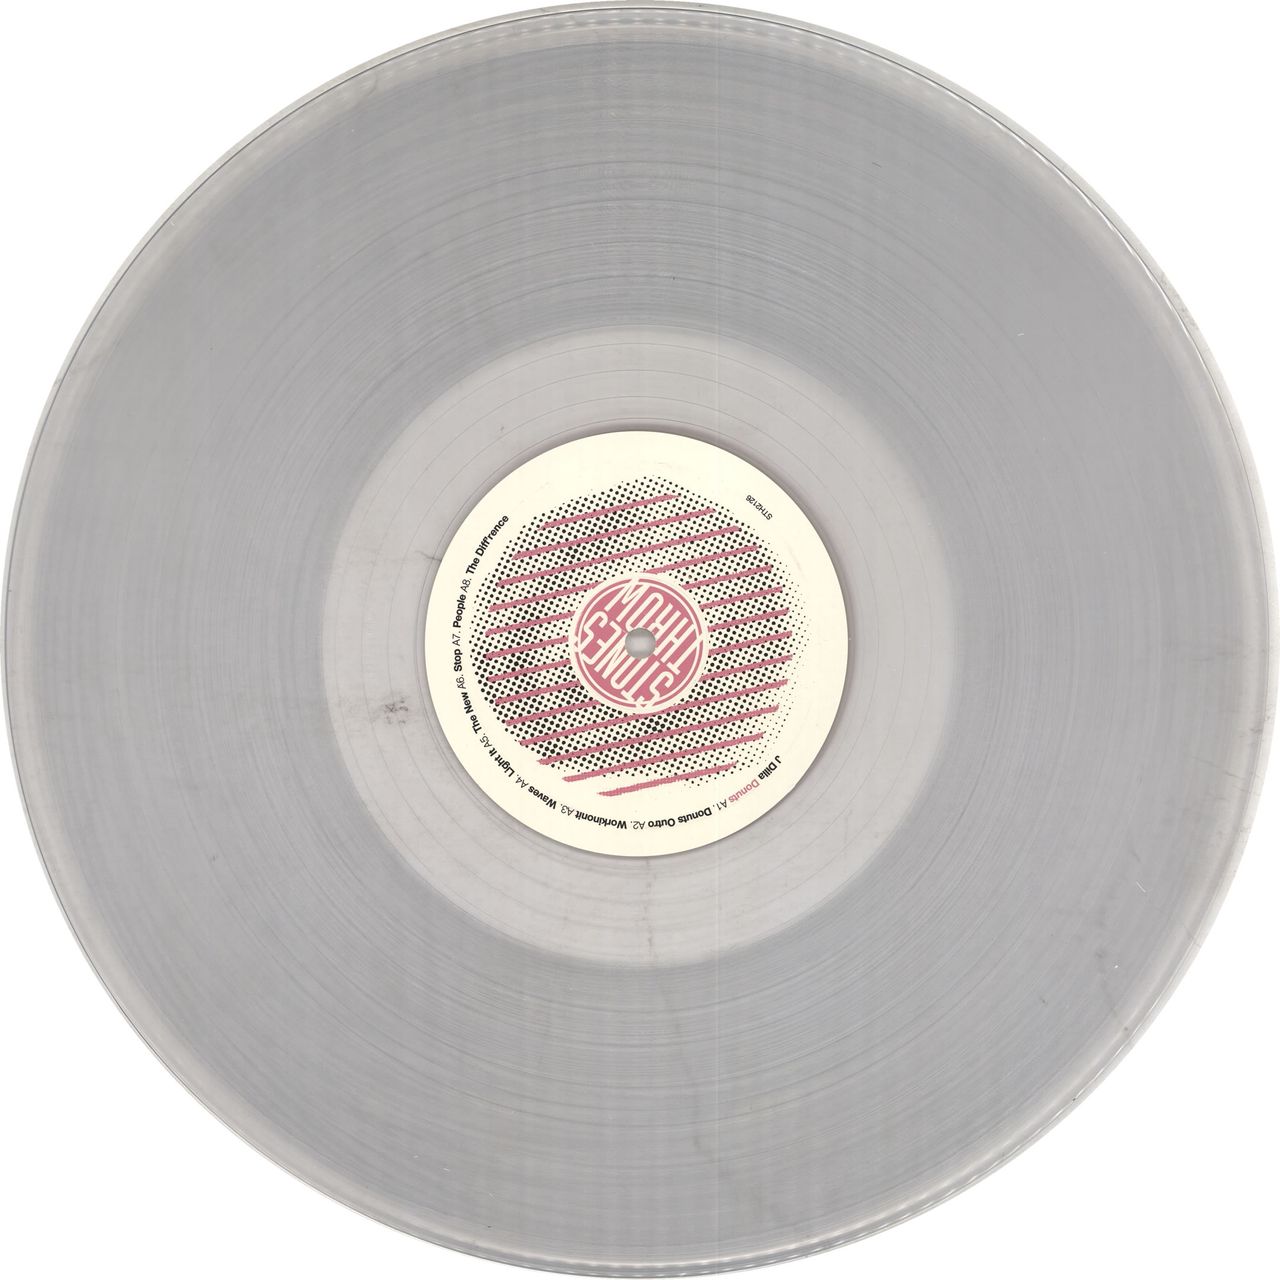 J Dilla Donuts - 180gm Clear Vinyl US 2-LP vinyl set — RareVinyl.com